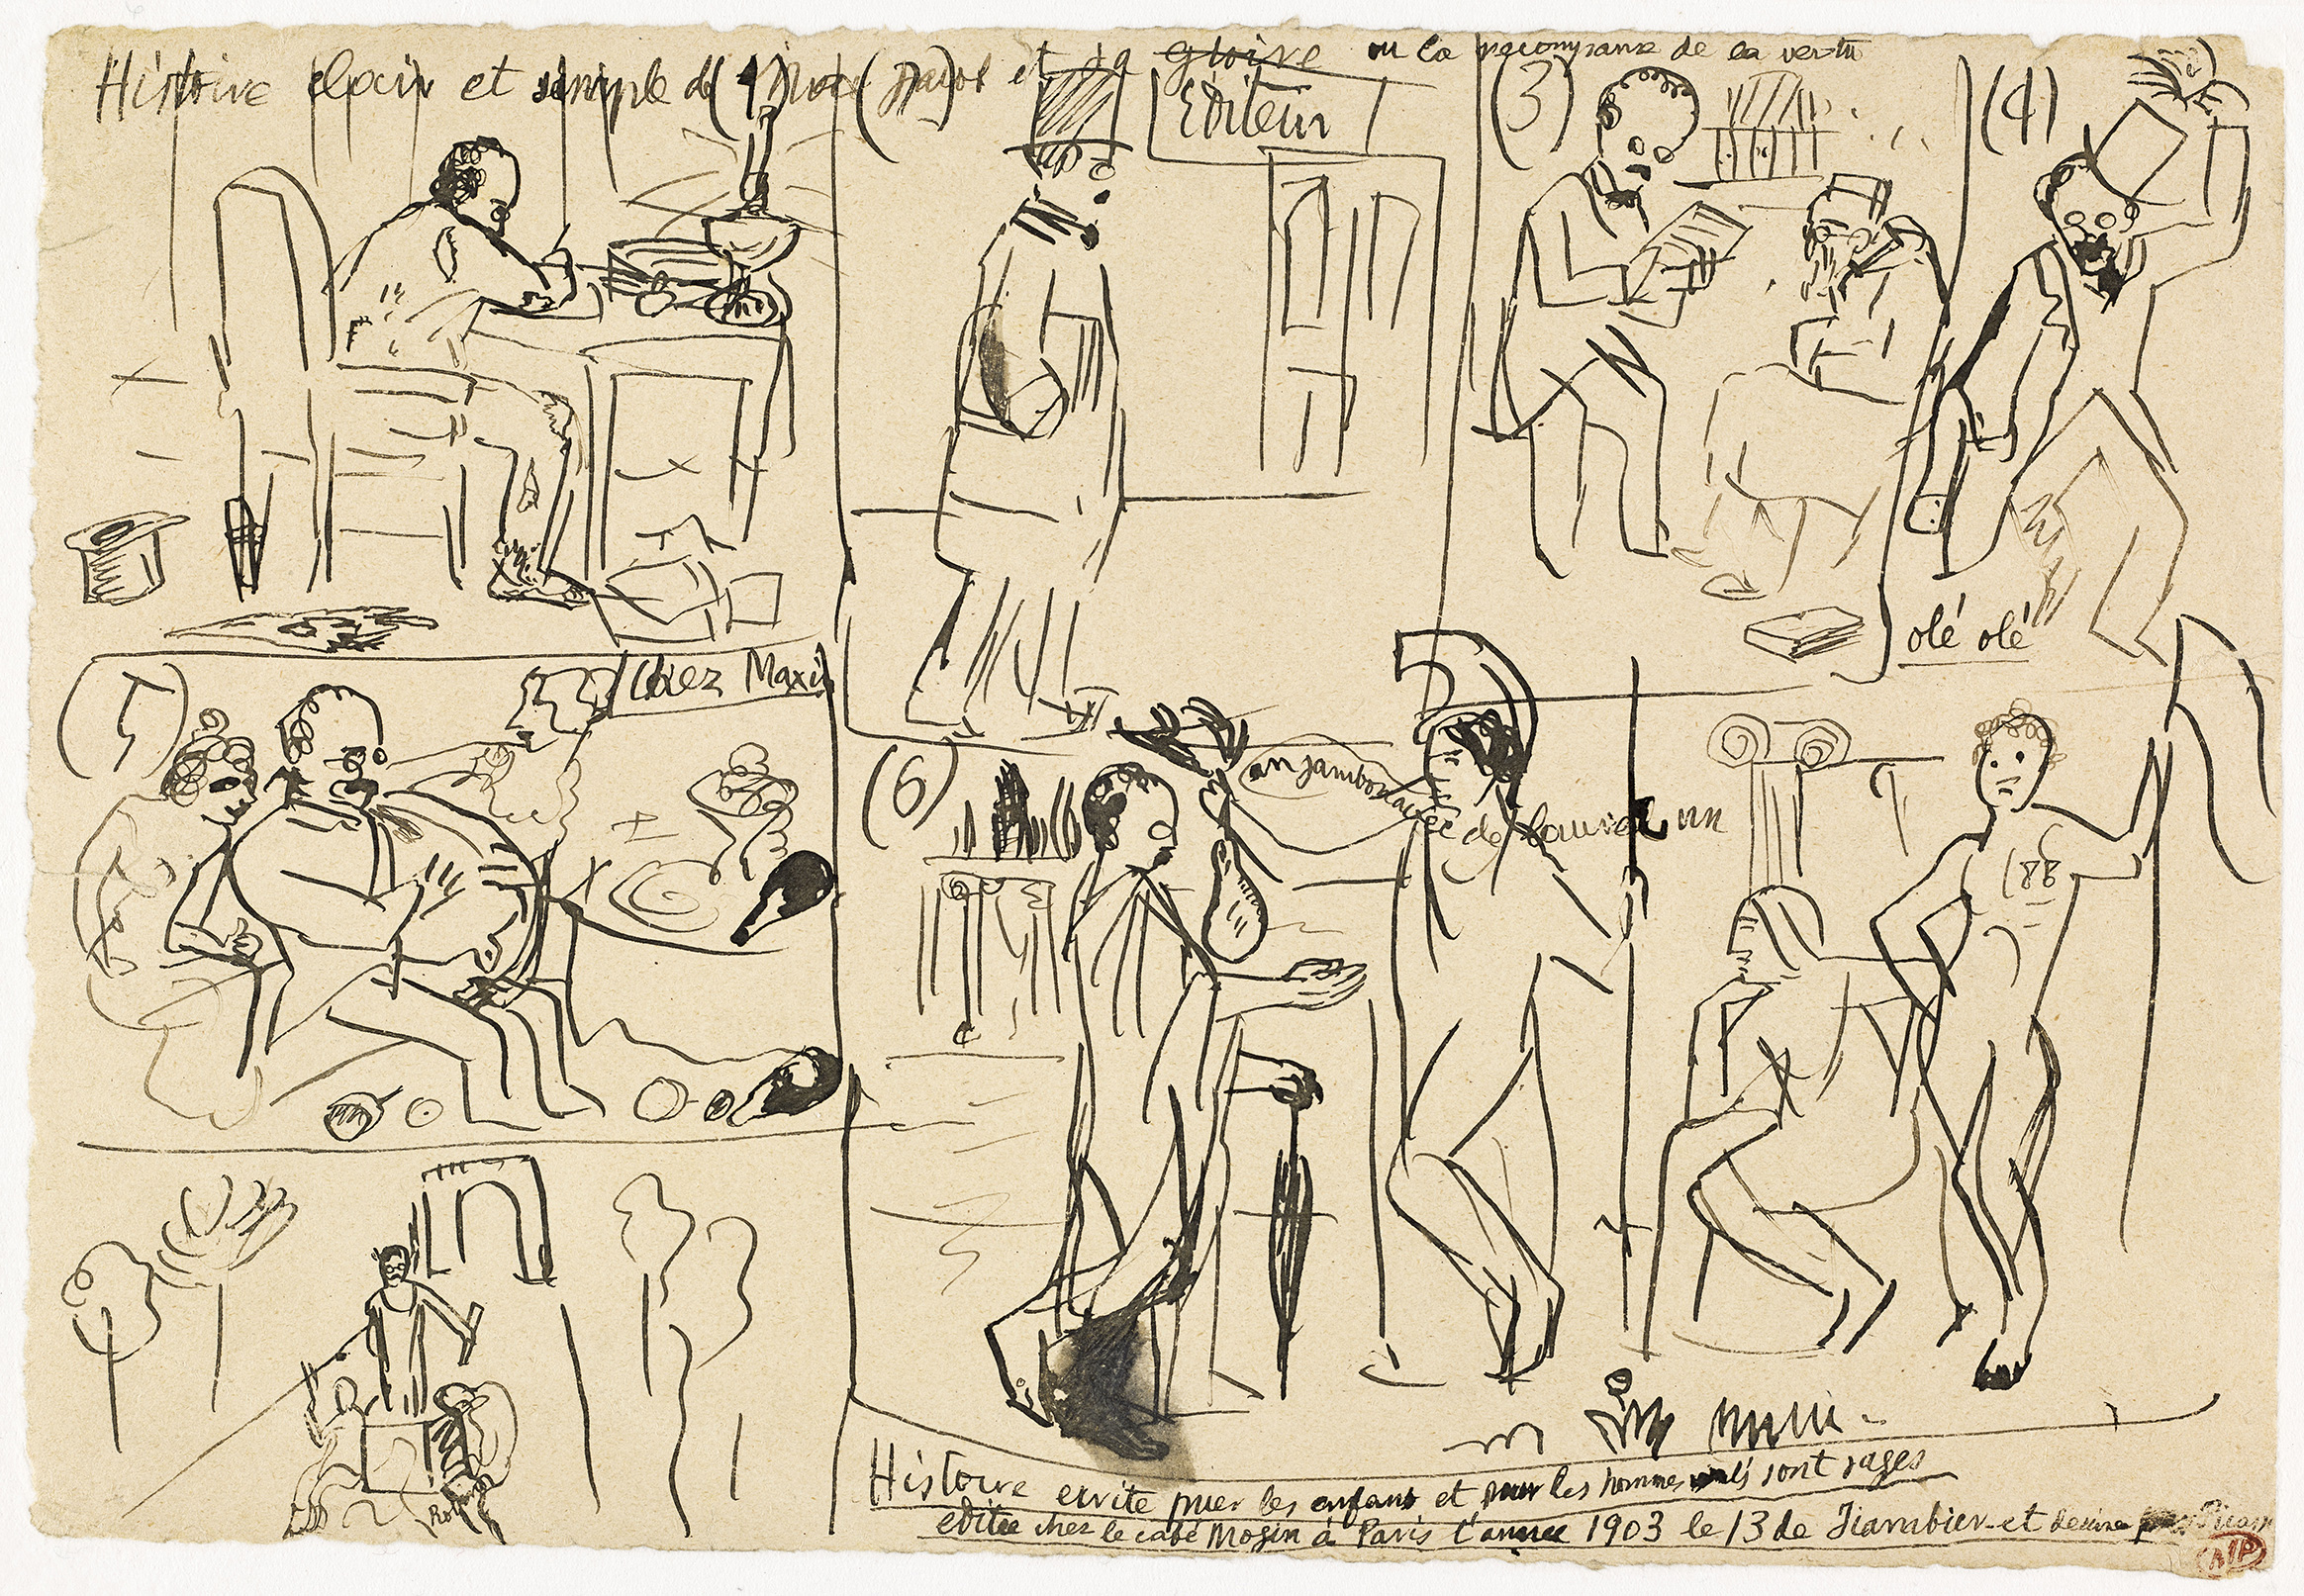 Picasso - Histoire claire et simple de Max Jacob - MP468 - 15-569524